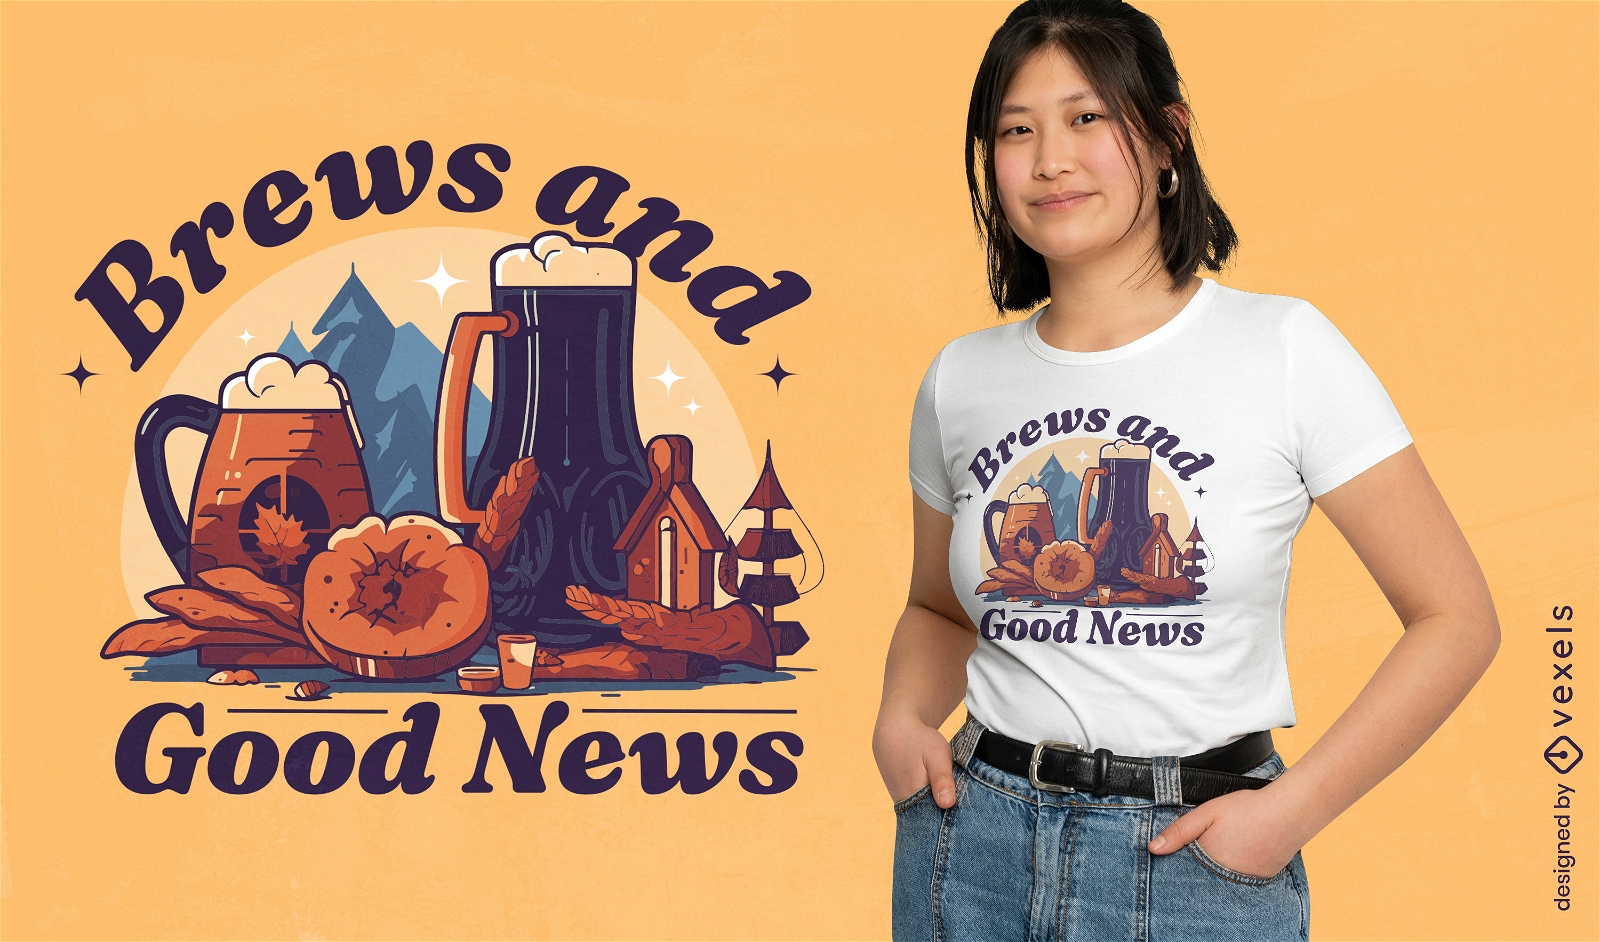 Brews and good news t-shirt design